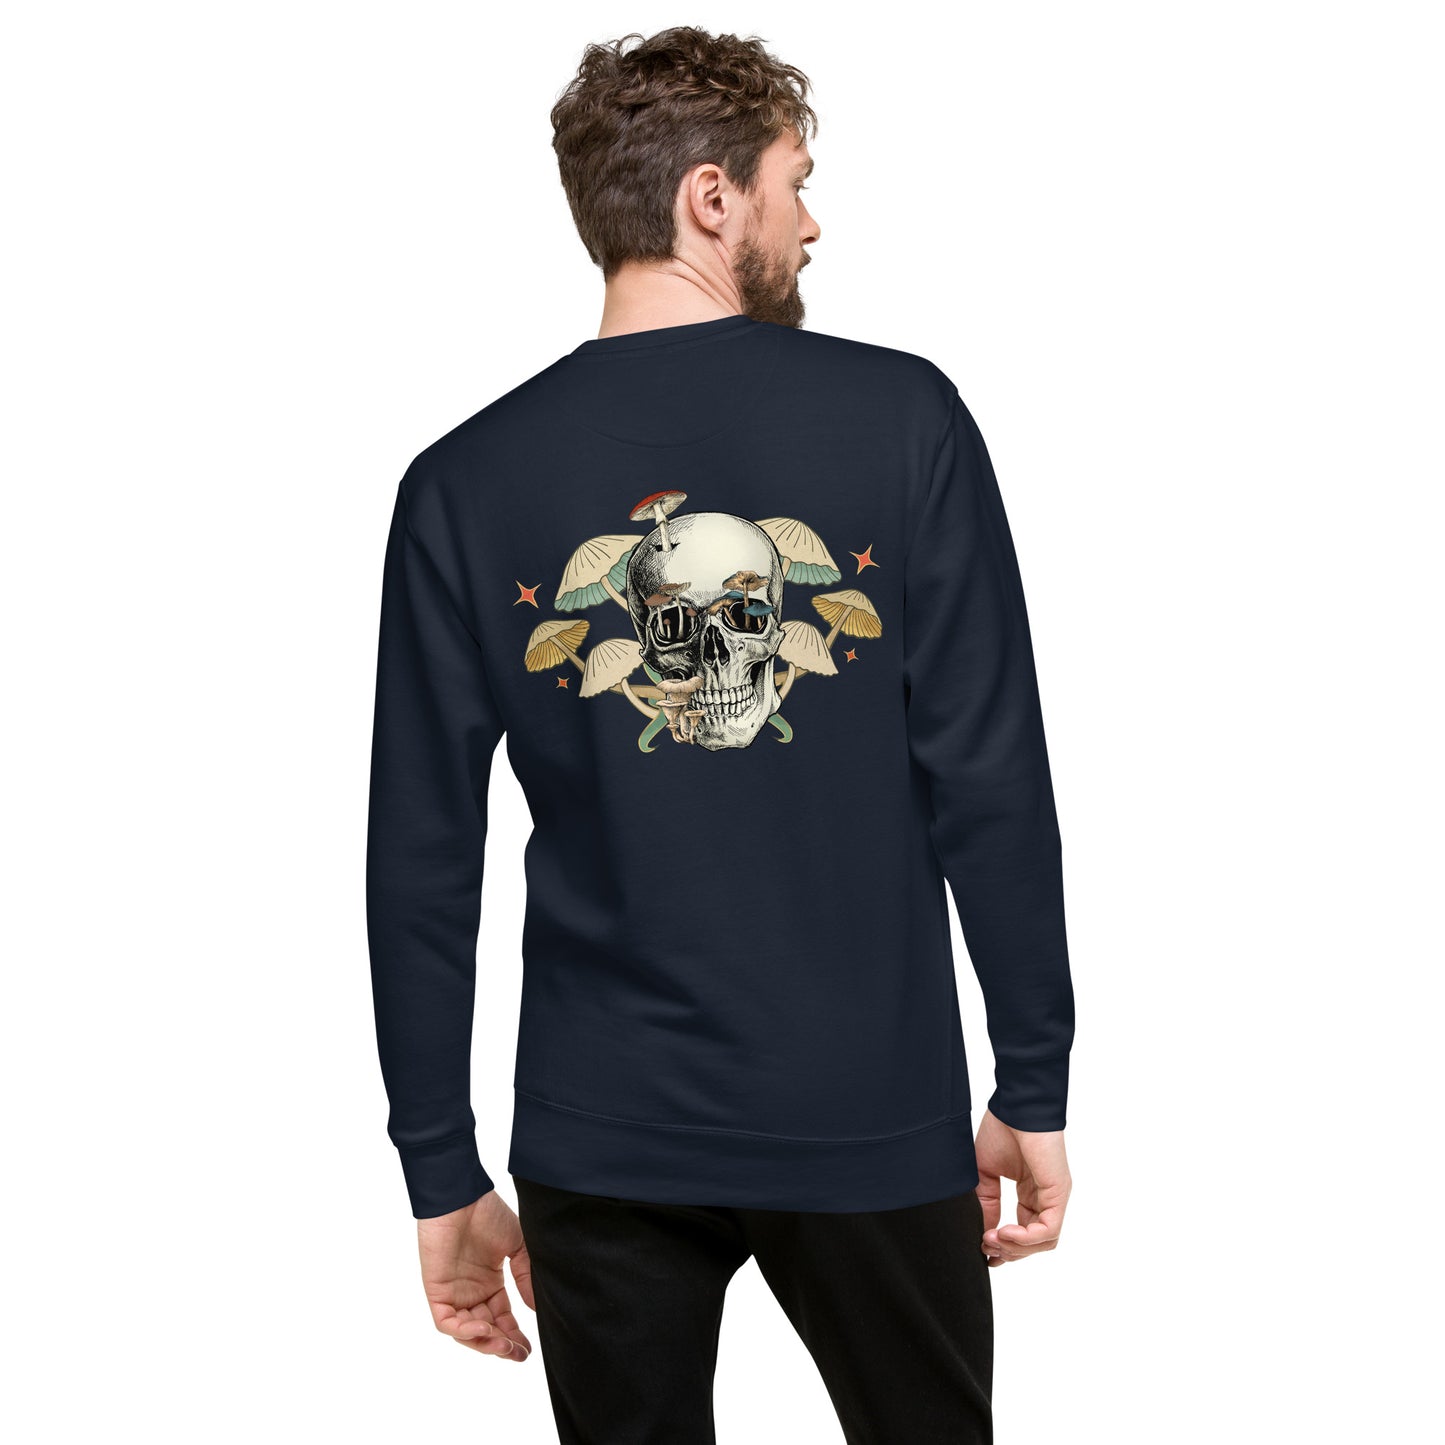 Skull Mushroom Unisex Premium Sweatshirt